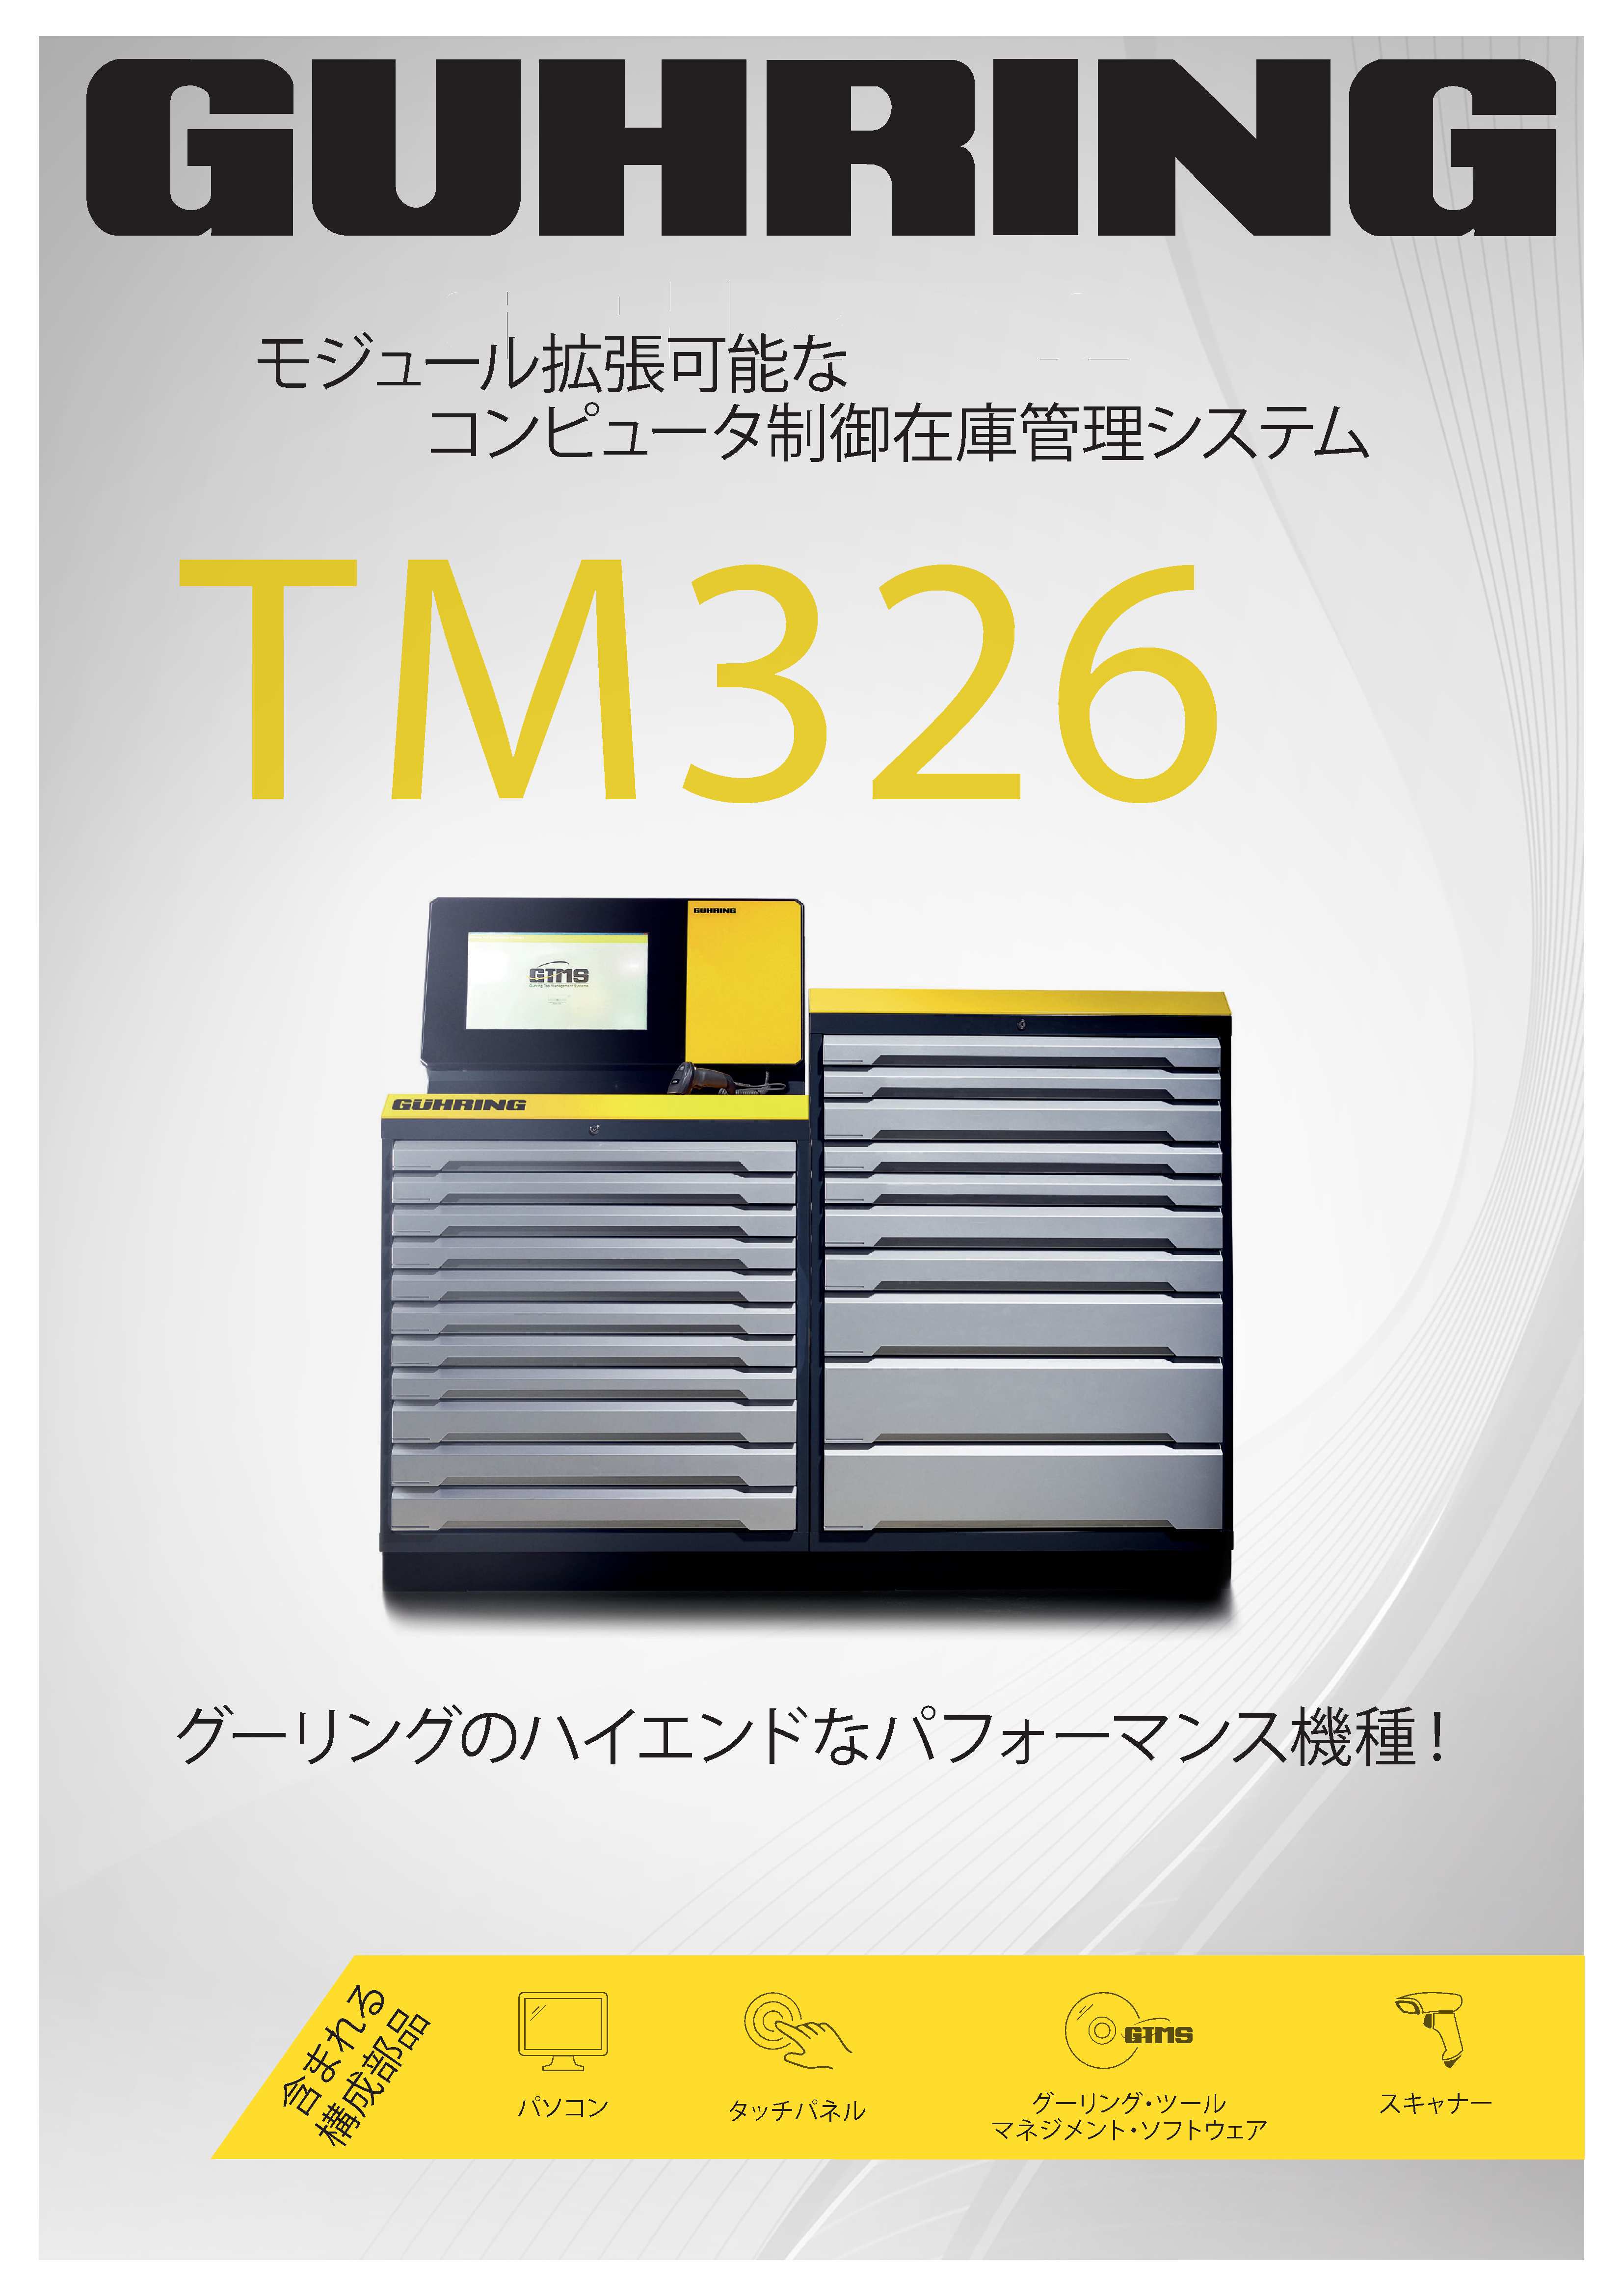 ツールマネージメントシステムTM326